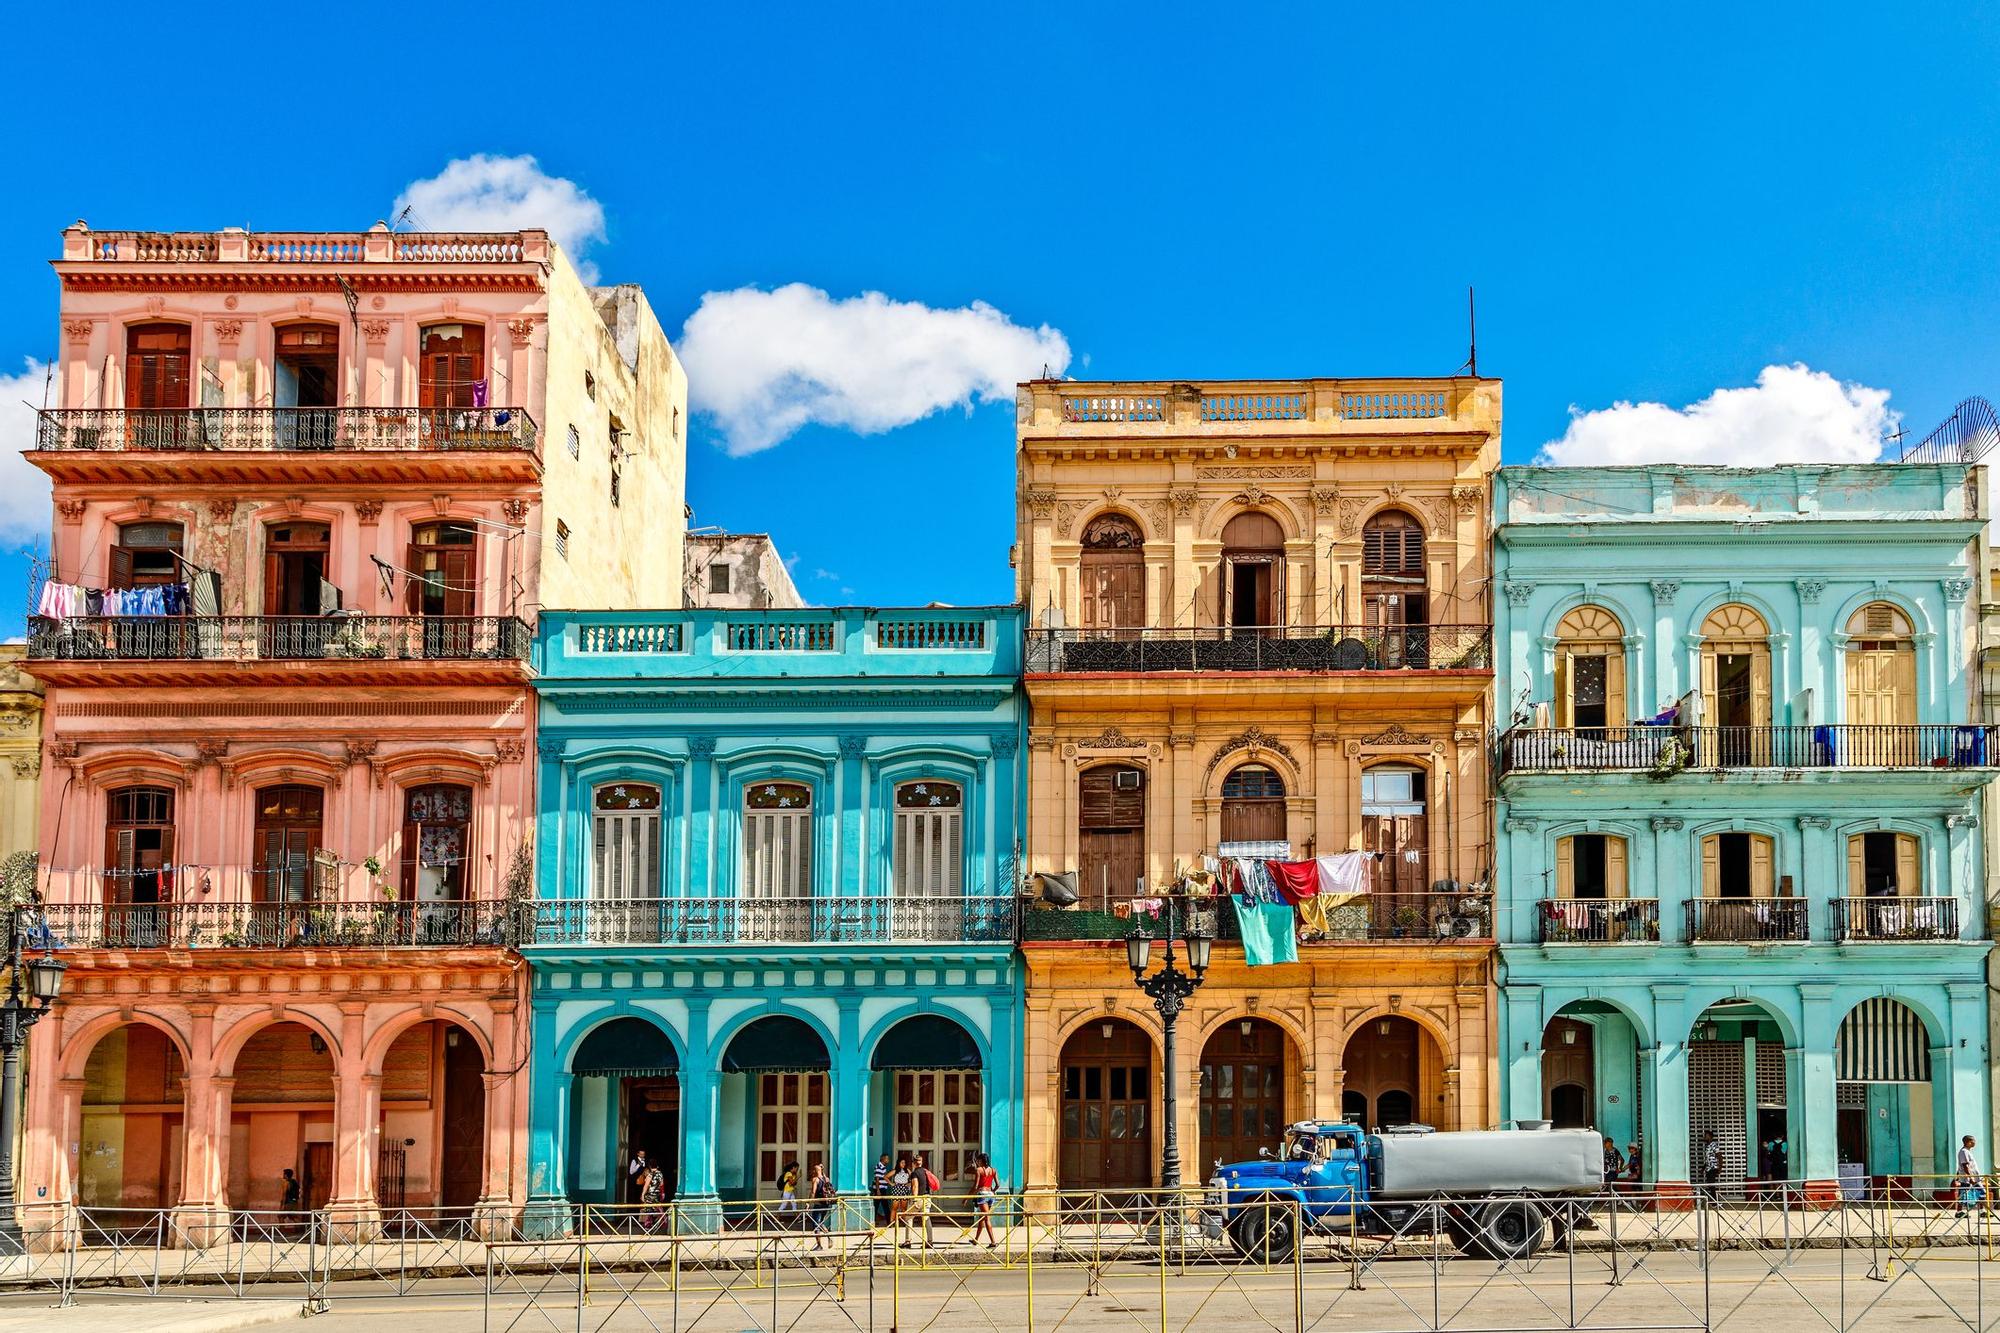 Las coloridas calles de La Habana son la seña de identidad de la ciudad